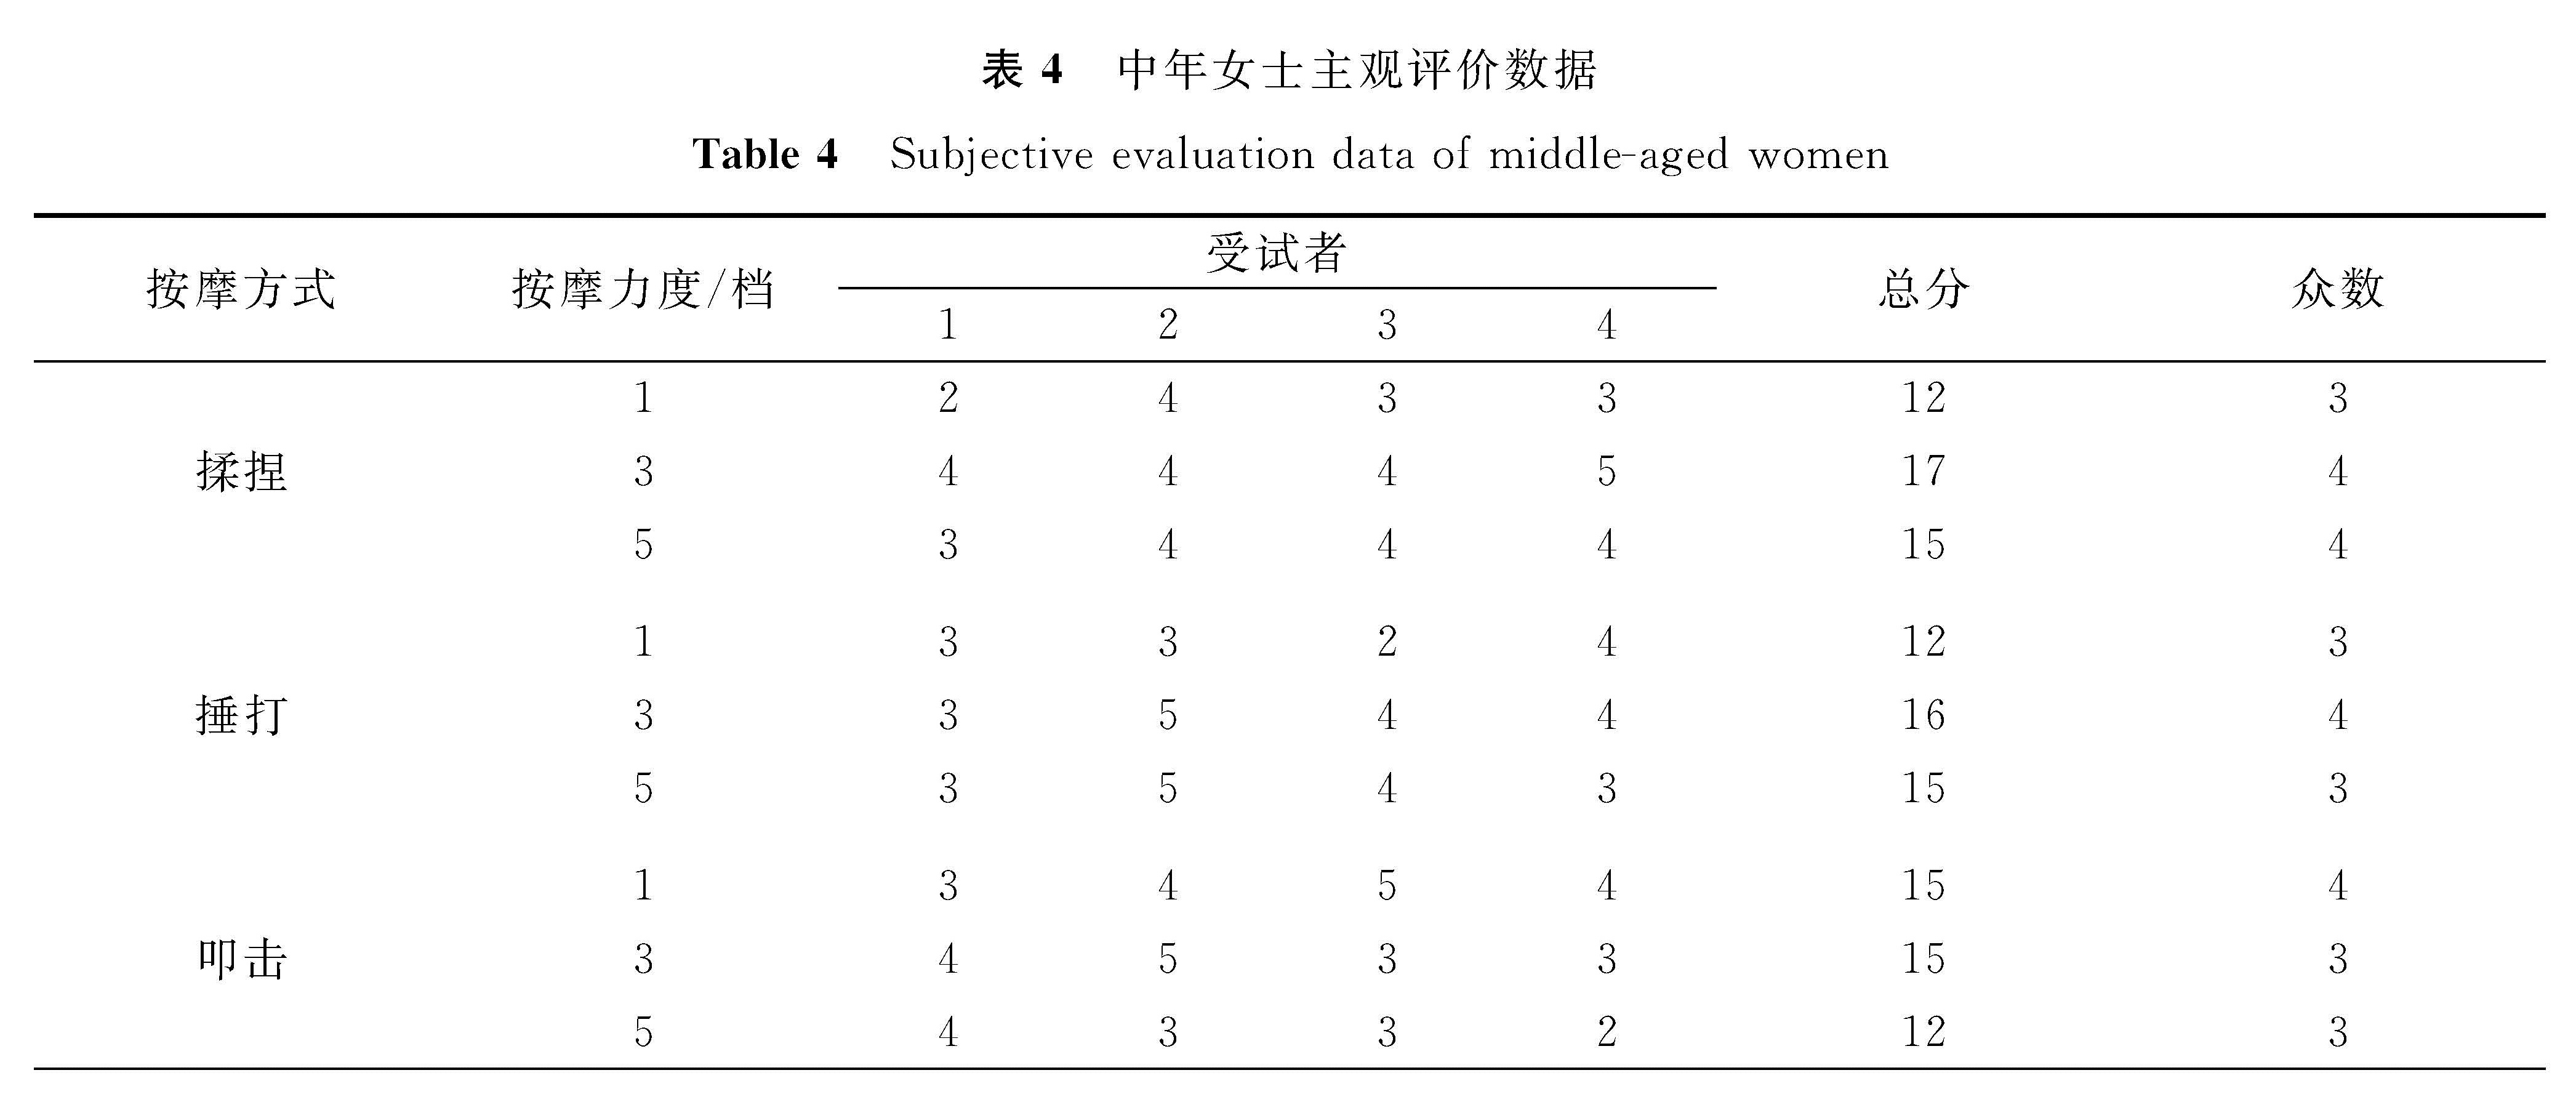 表4 中年女士主观评价数据<br/>Table 4 Subjective evaluation data of middle-aged women